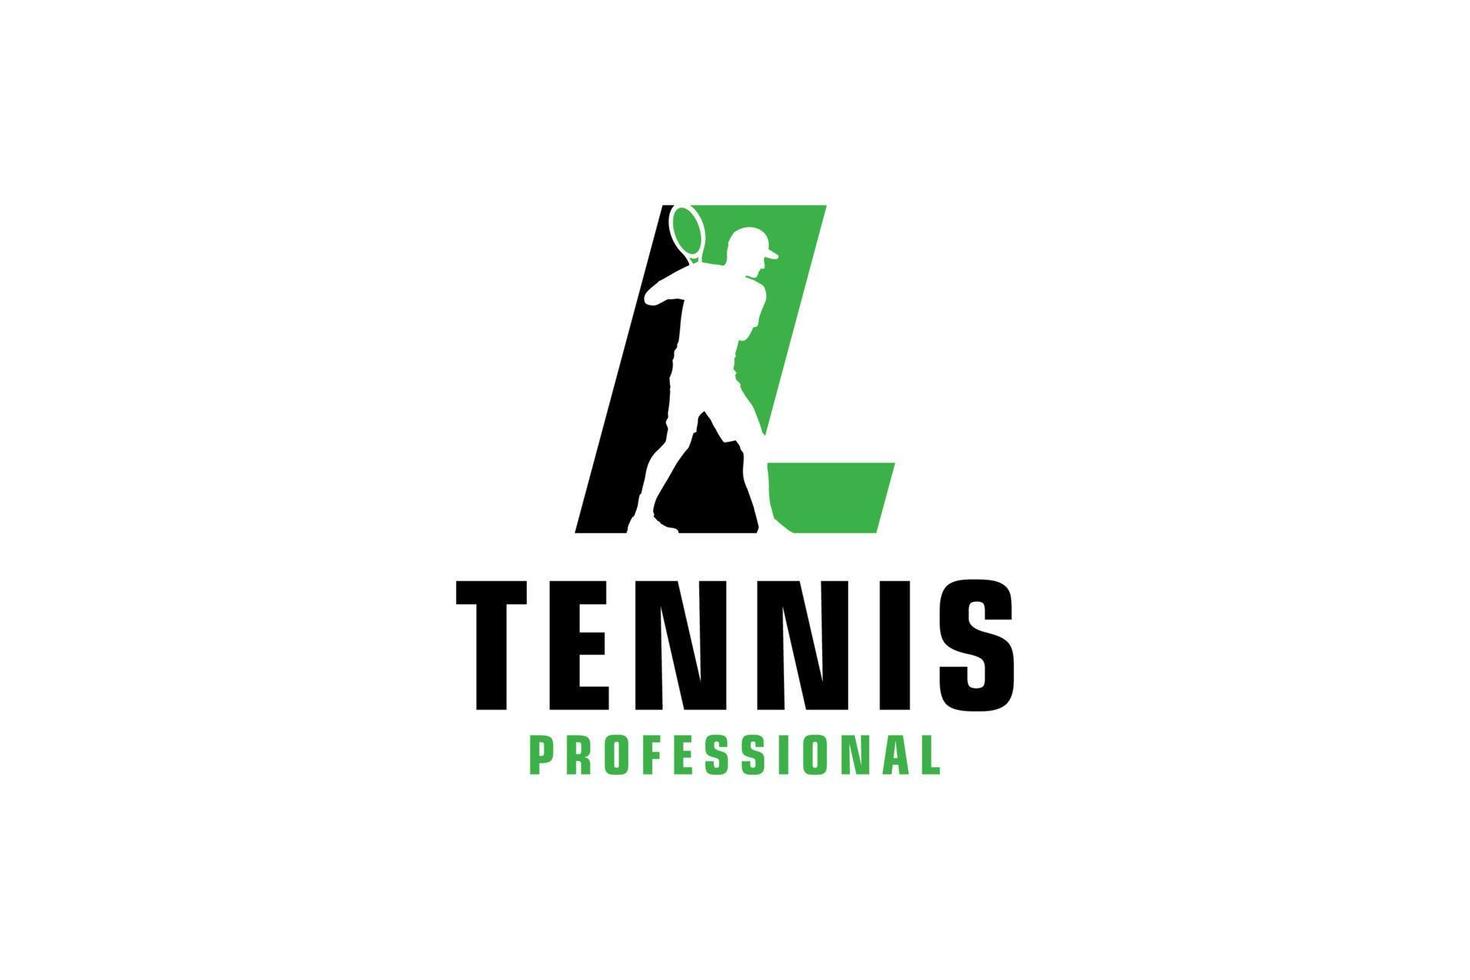 buchstabe l mit tennisspieler-silhouette-logo-design. Vektordesign-Vorlagenelemente für Sportteams oder Corporate Identity. vektor